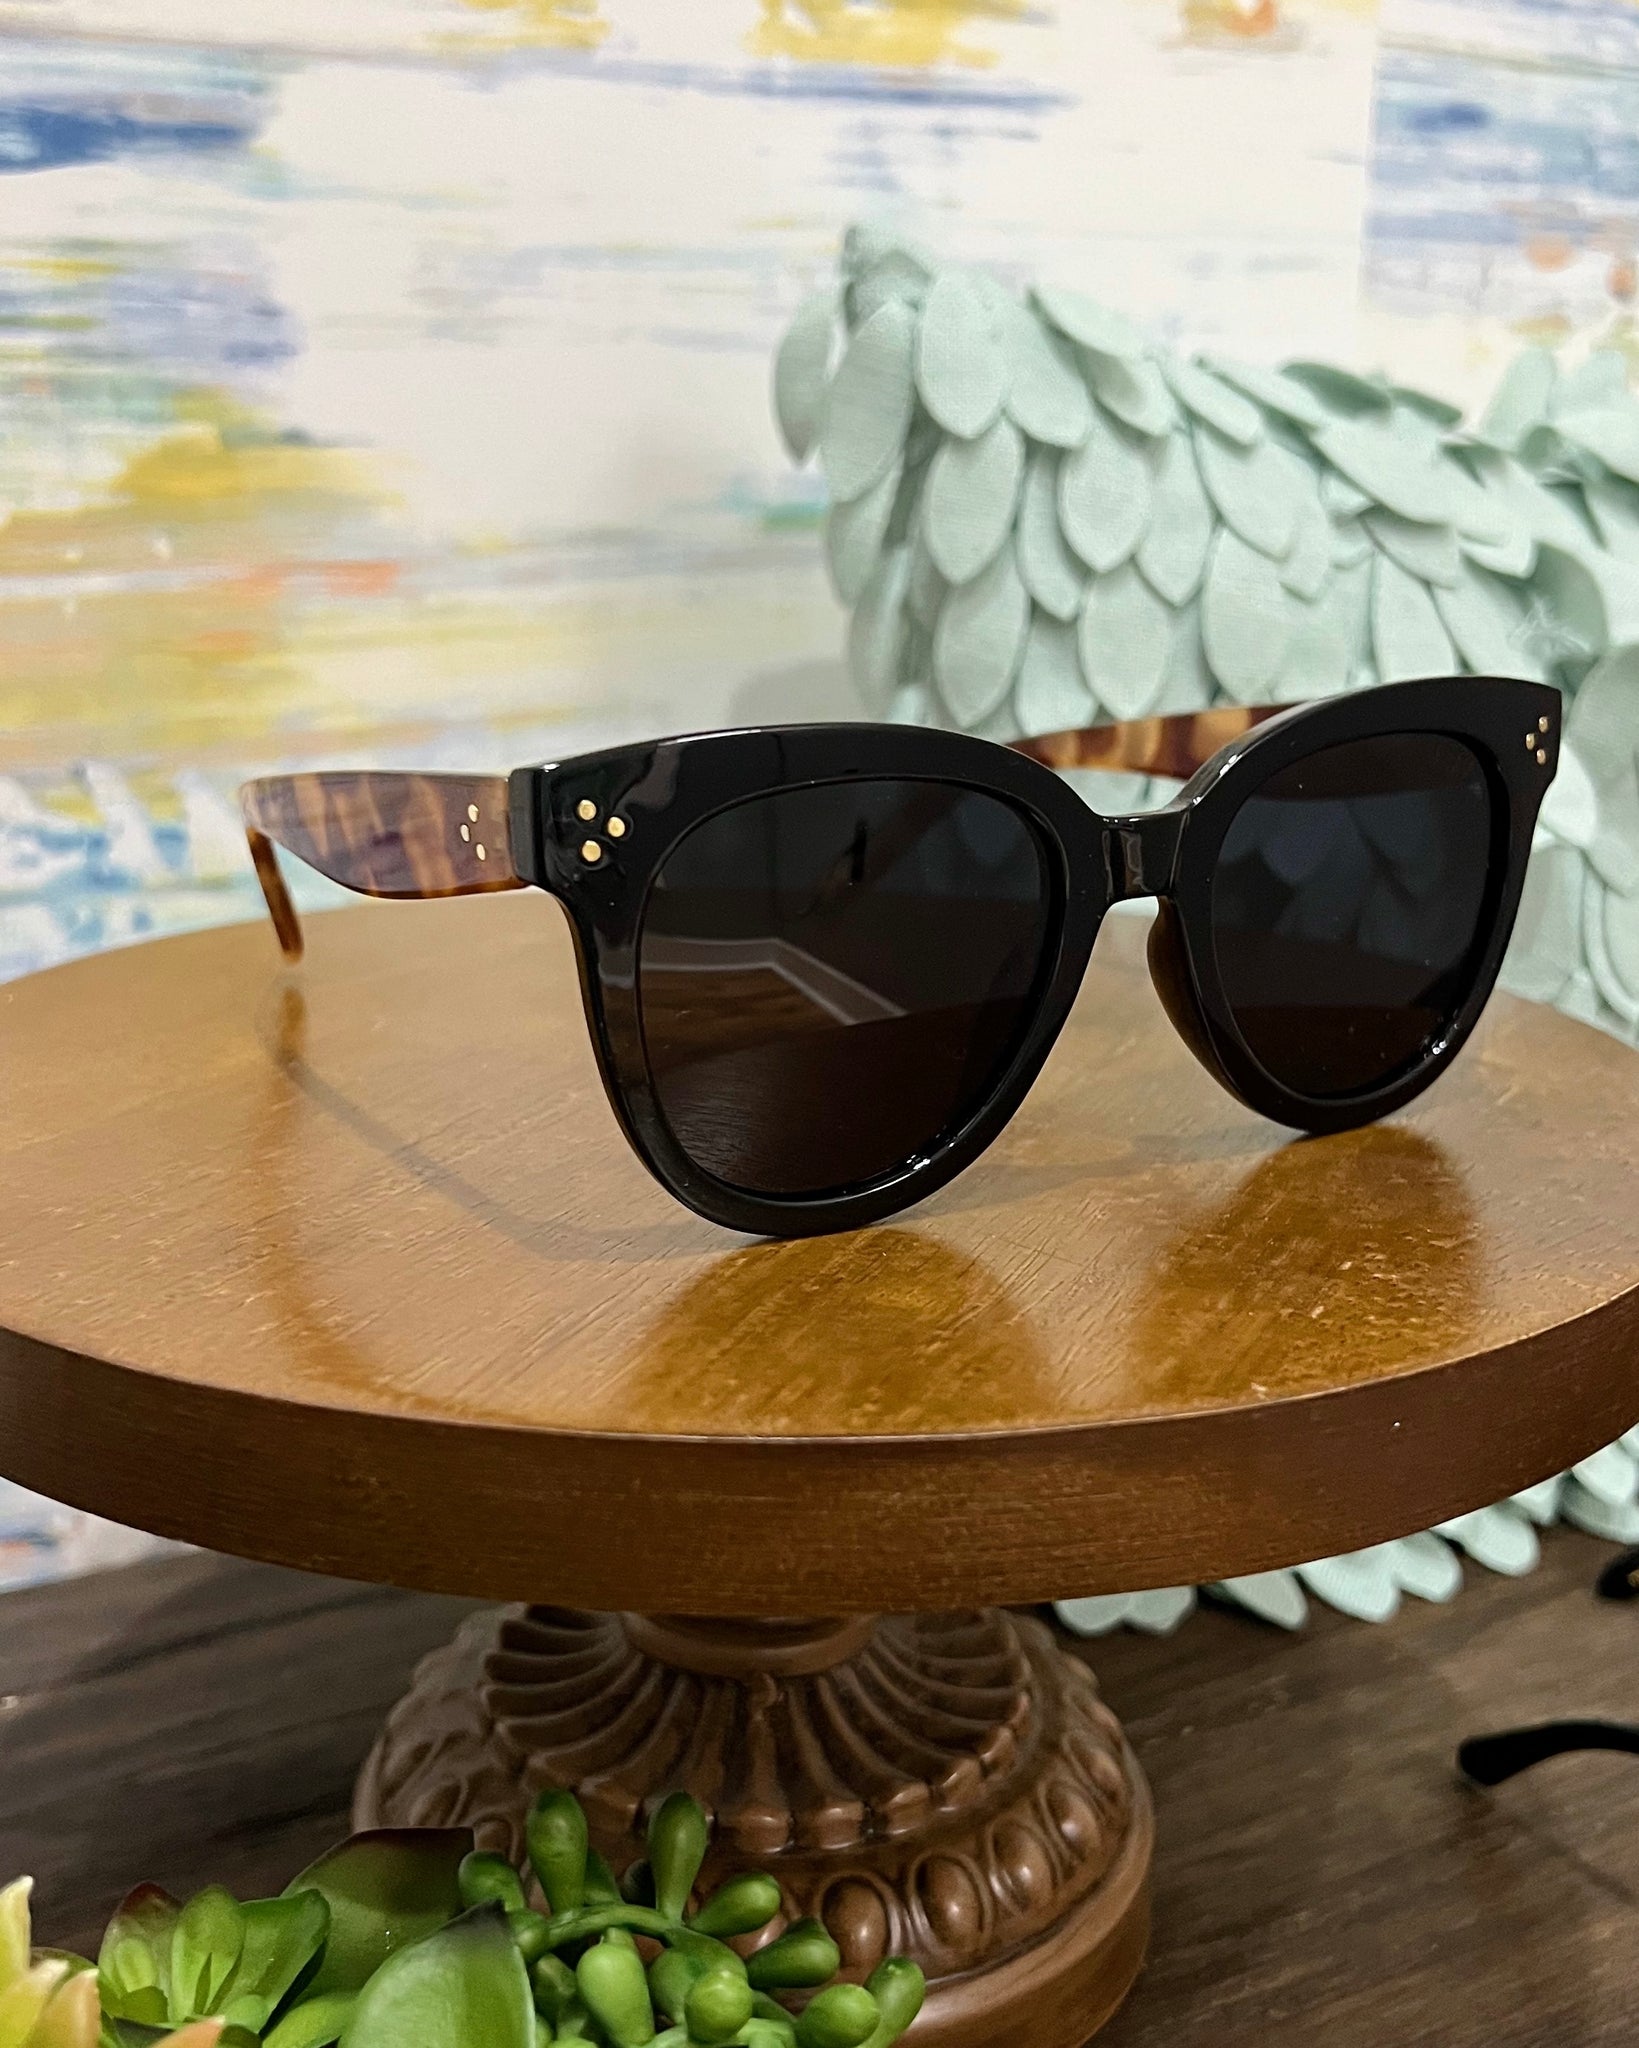 I-SEA Cleo Sunglasses in Black/Tortoise